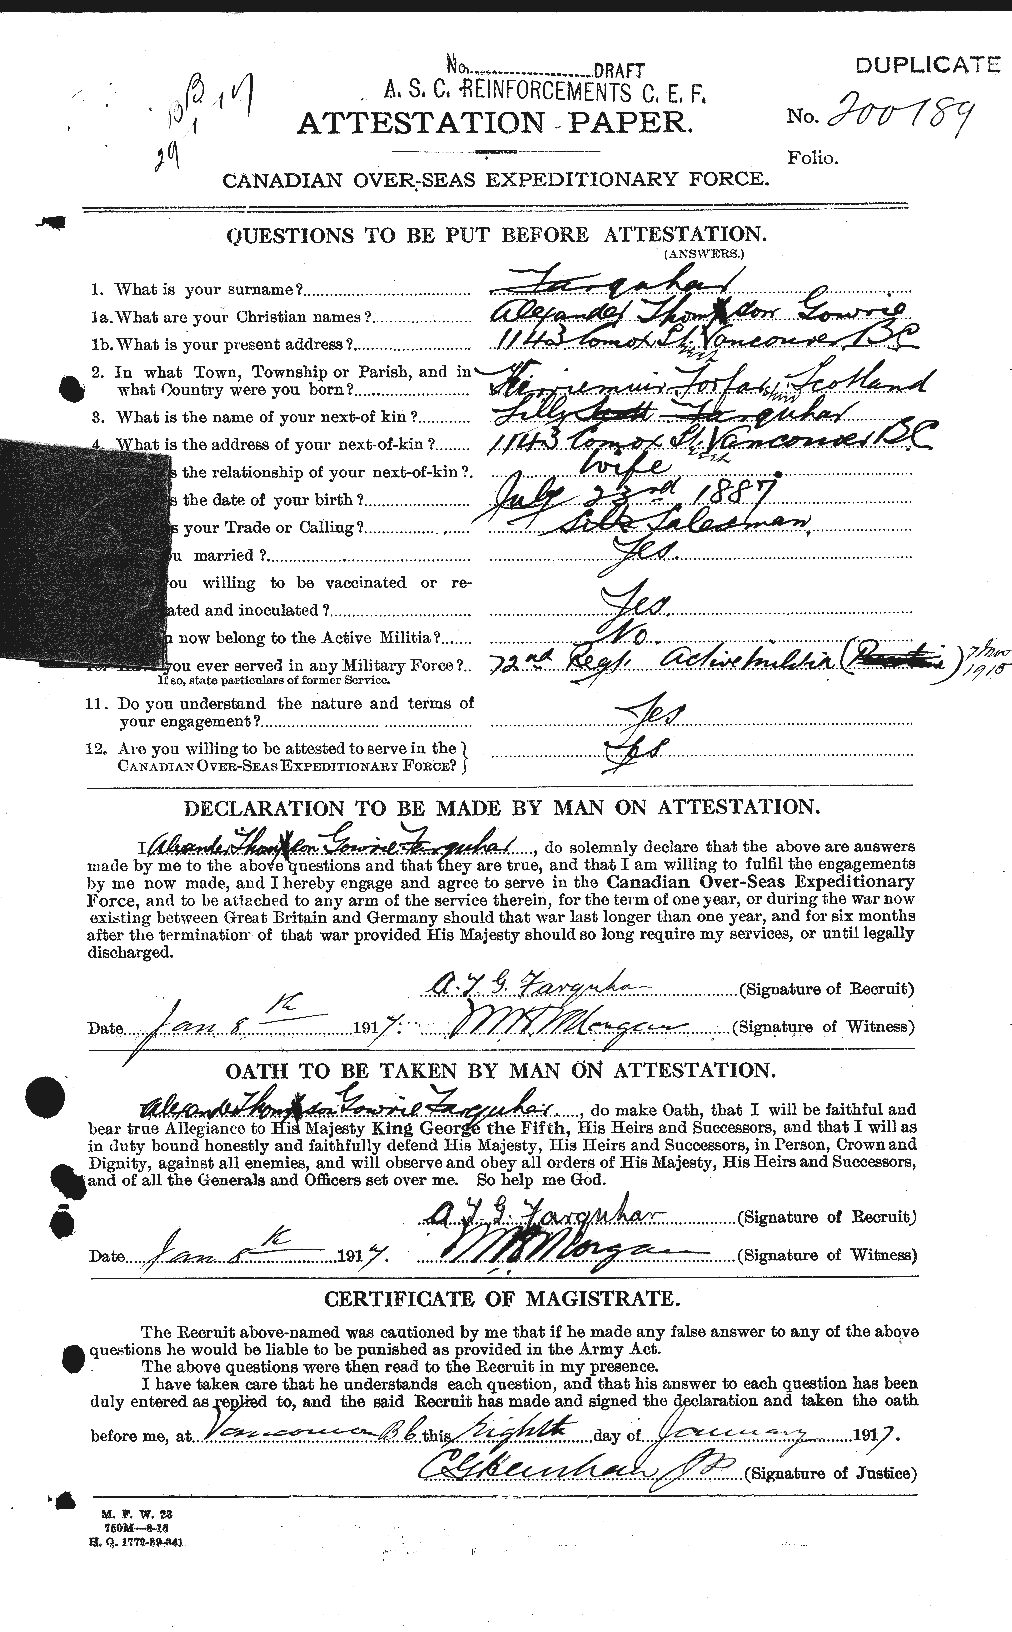 Dossiers du Personnel de la Première Guerre mondiale - CEC 318760a